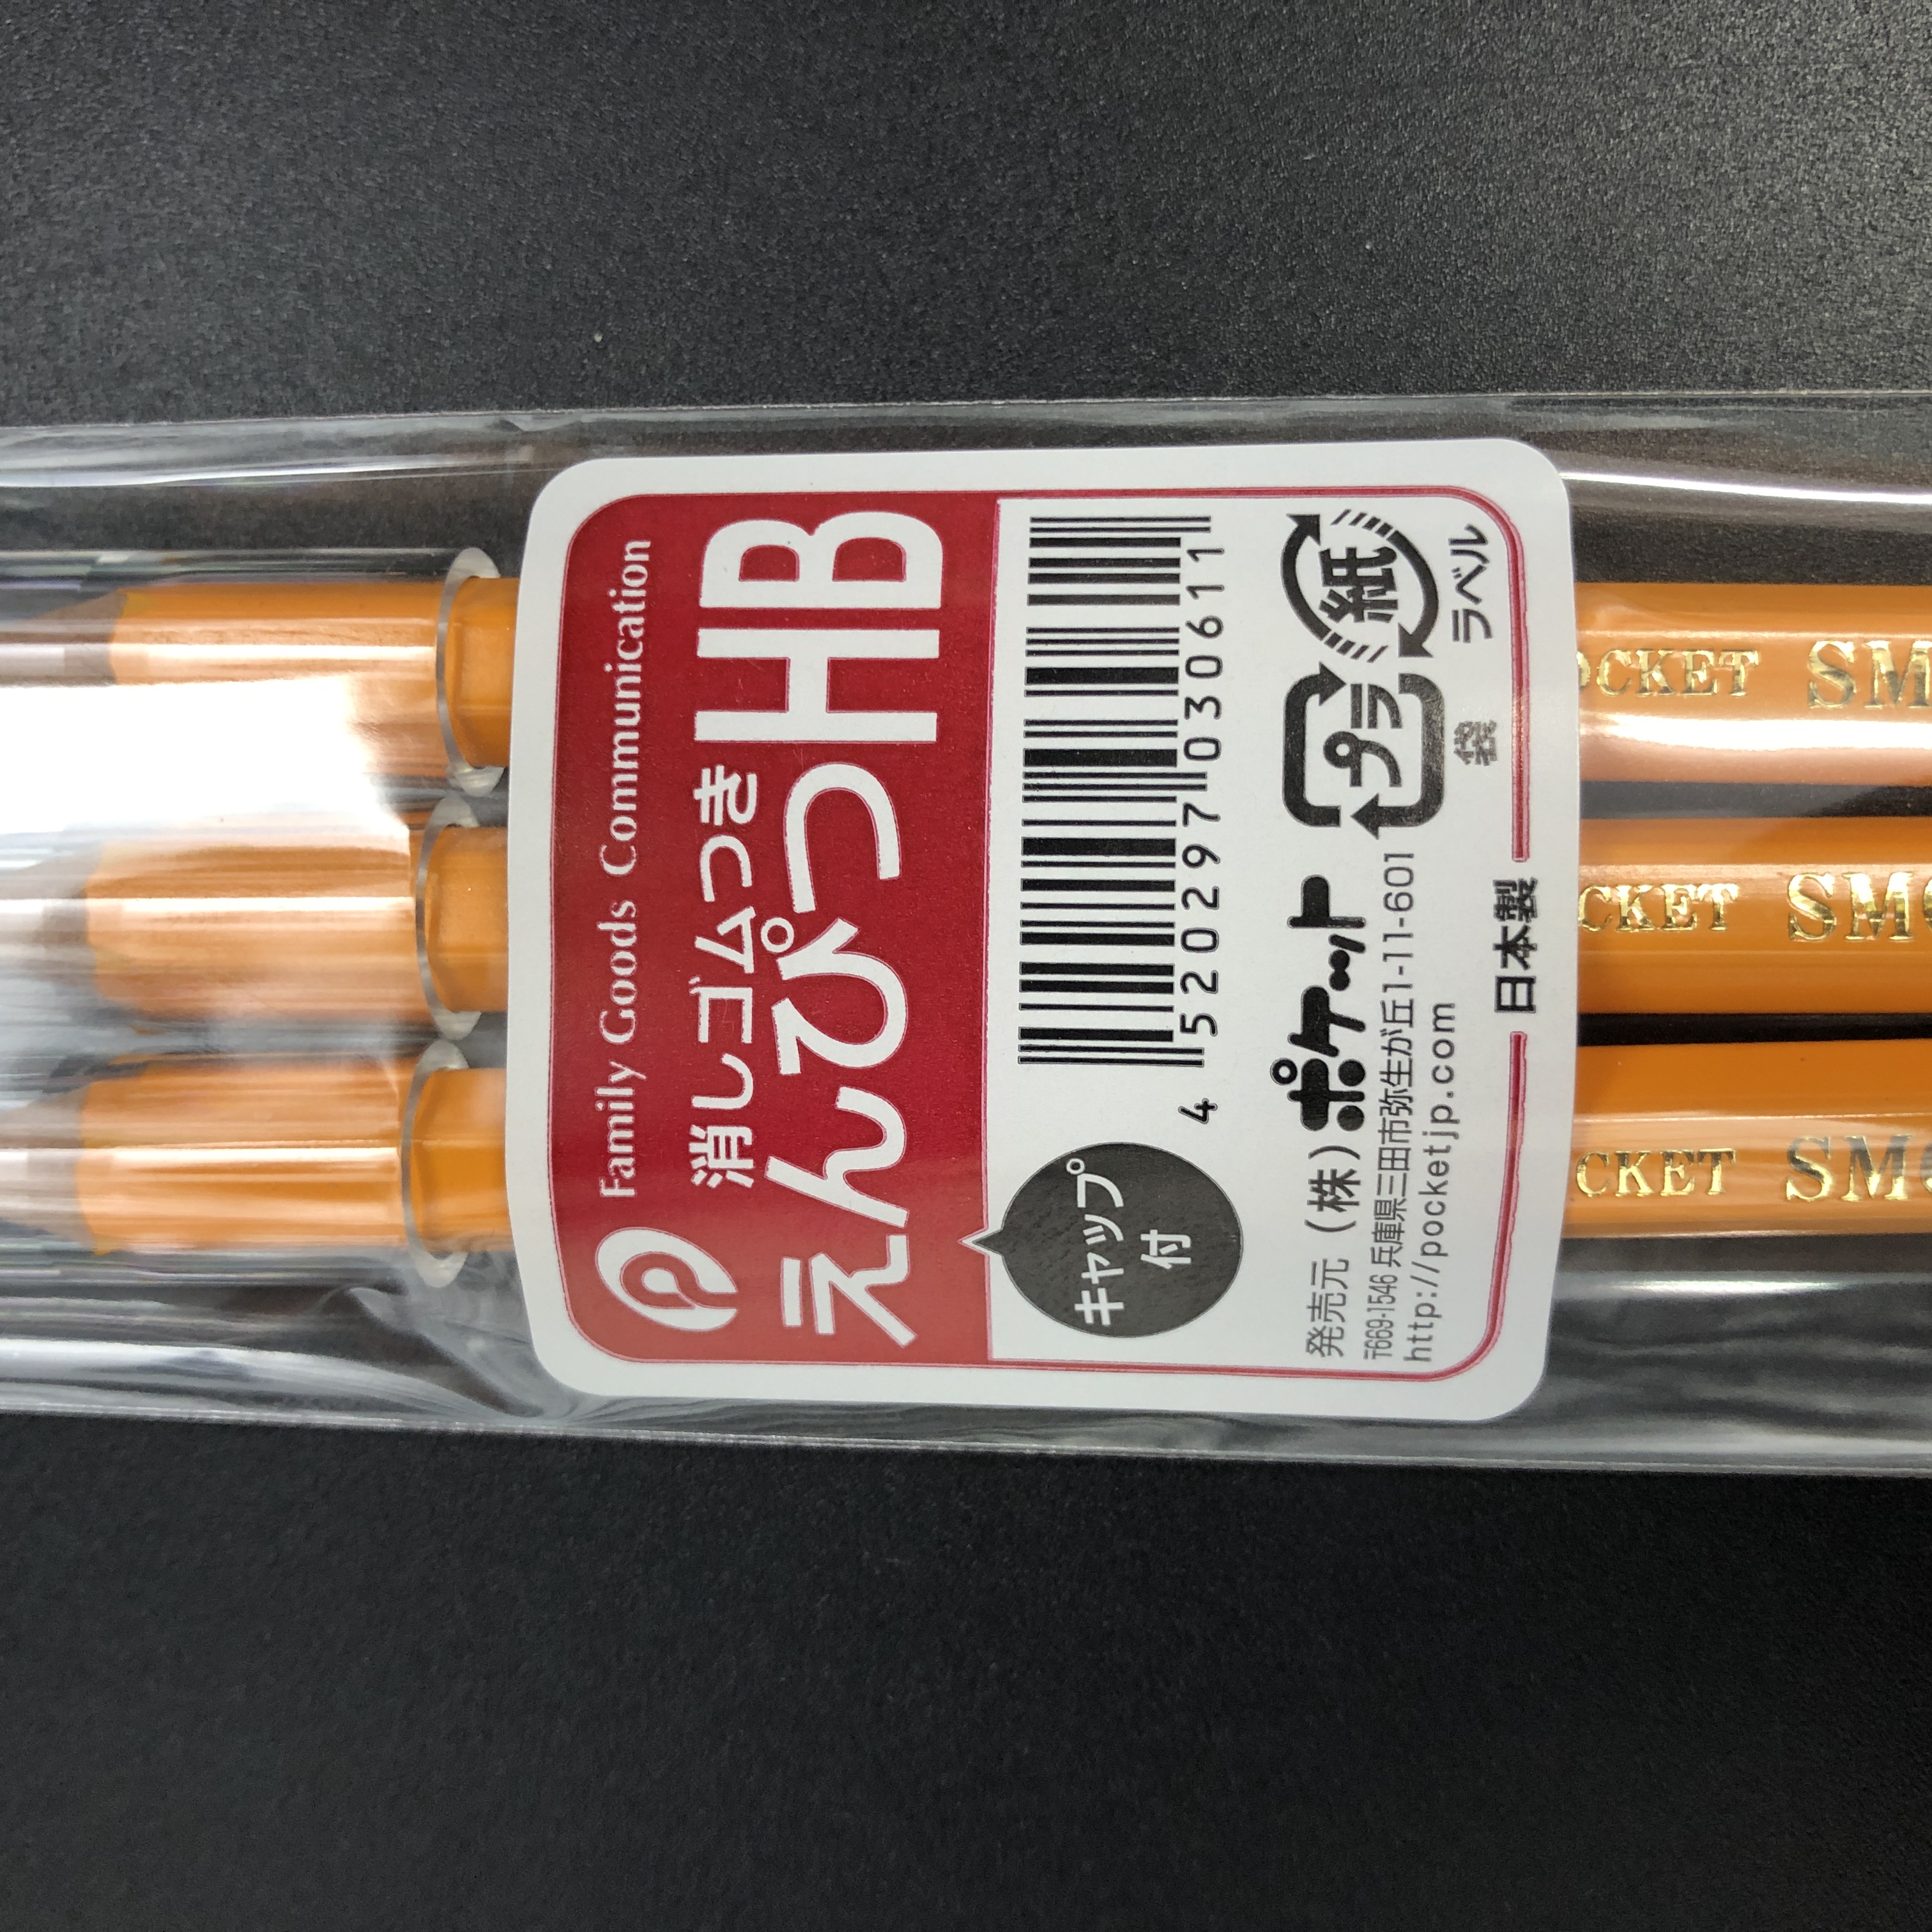 文具 筆記用具 鉛筆 色鉛筆 鉛筆キャップ 消しゴムつき鉛筆 100均商品で経費削減 ぱちぱち通販